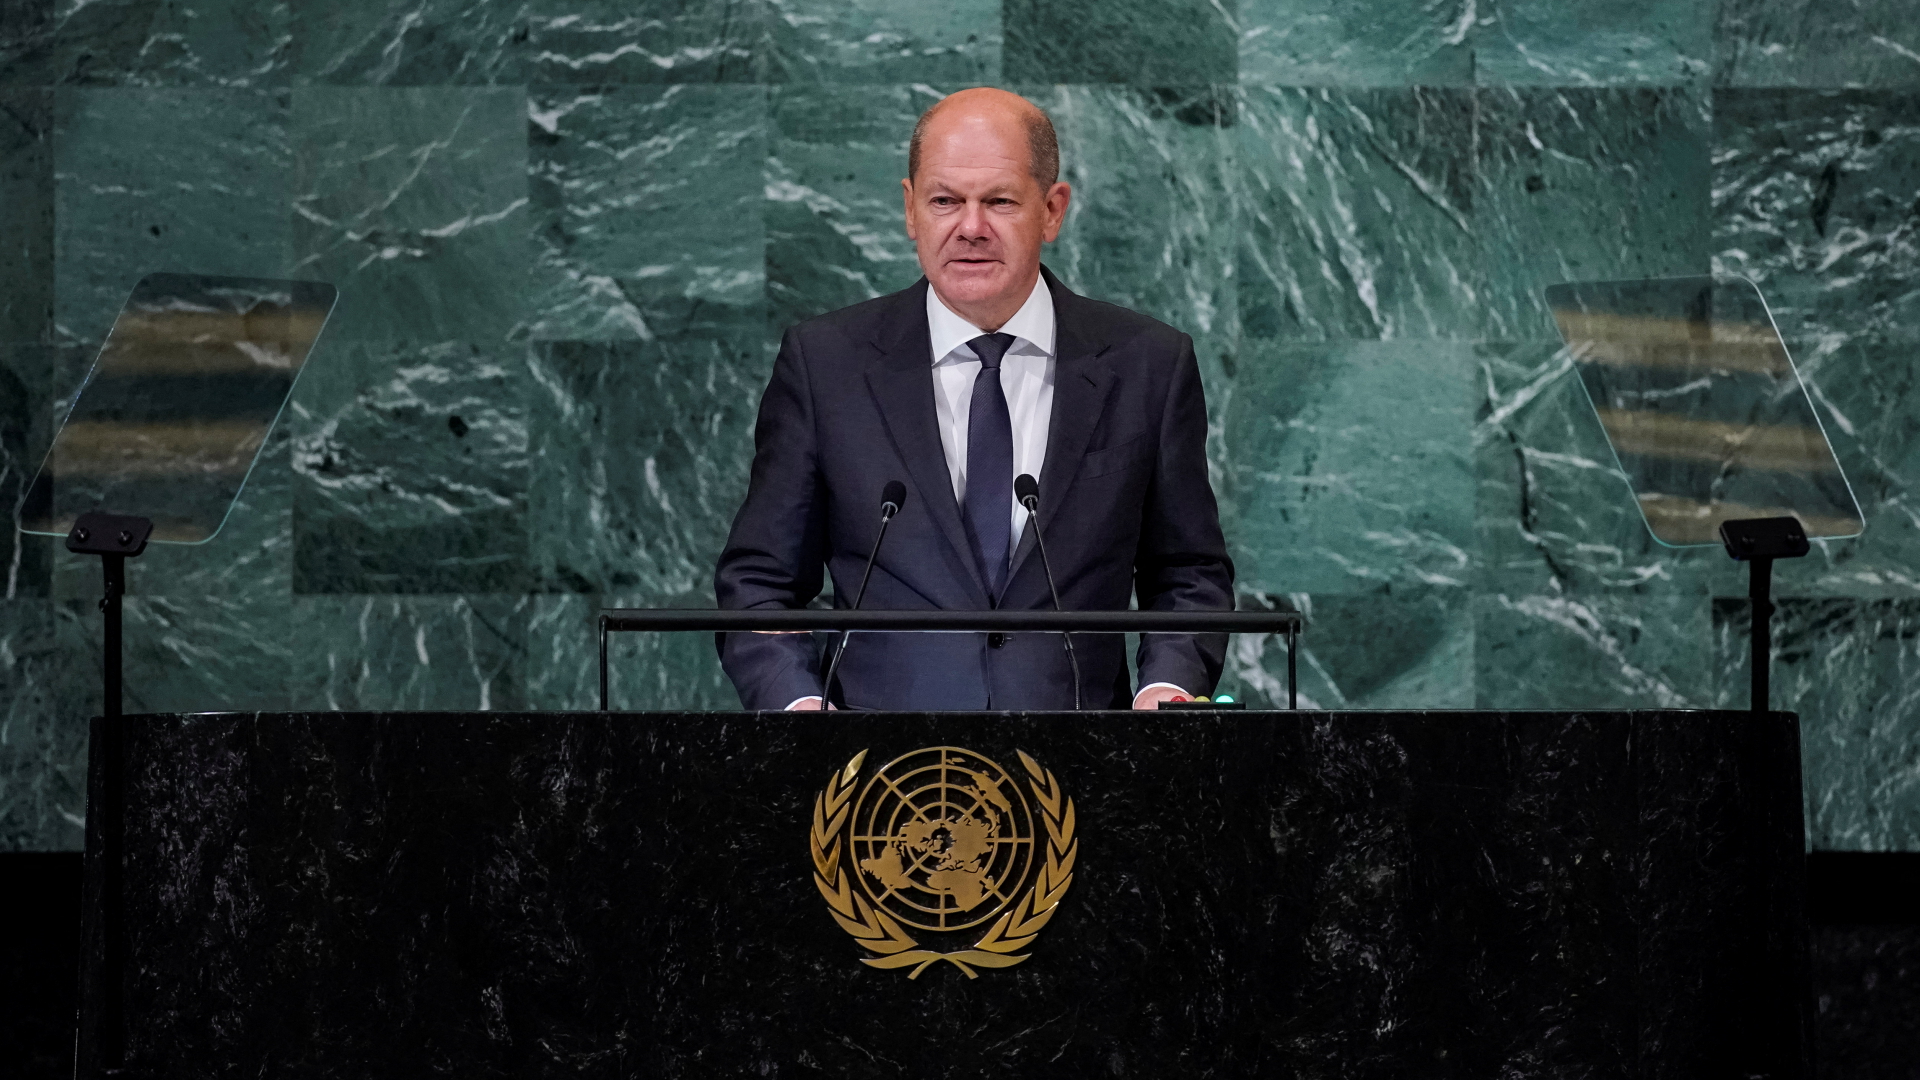 Olaf Scholz bei seiner Rede vor der UN-Generalversammlung. | REUTERS